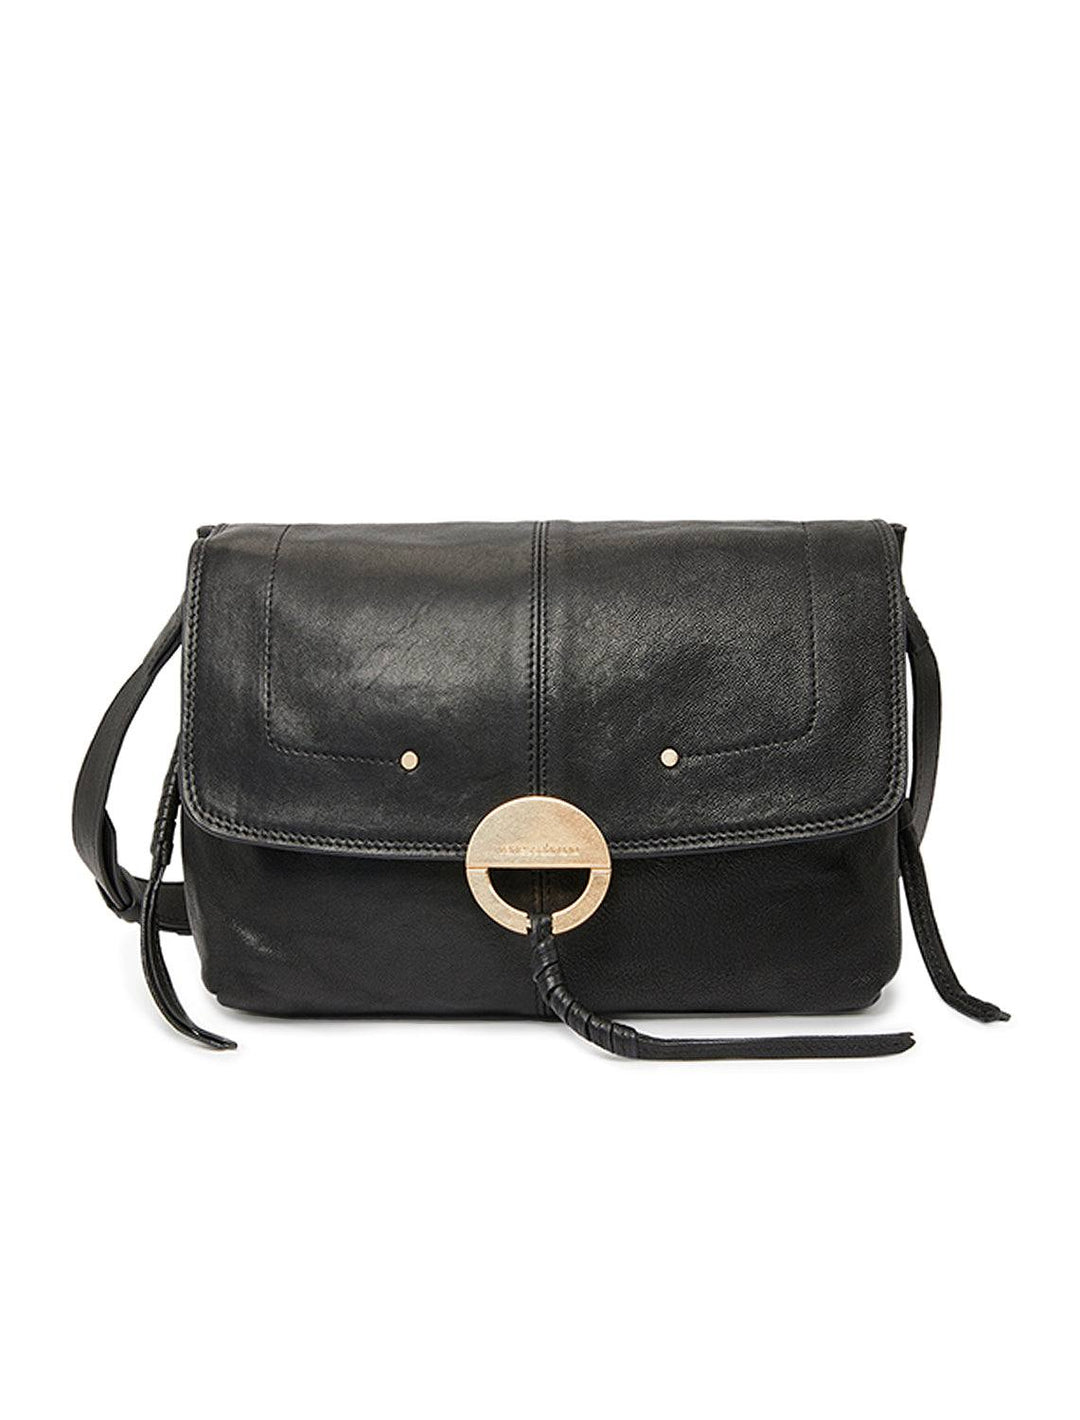 Front view of Vanessa Bruno's crossbody gm handbag in noir.